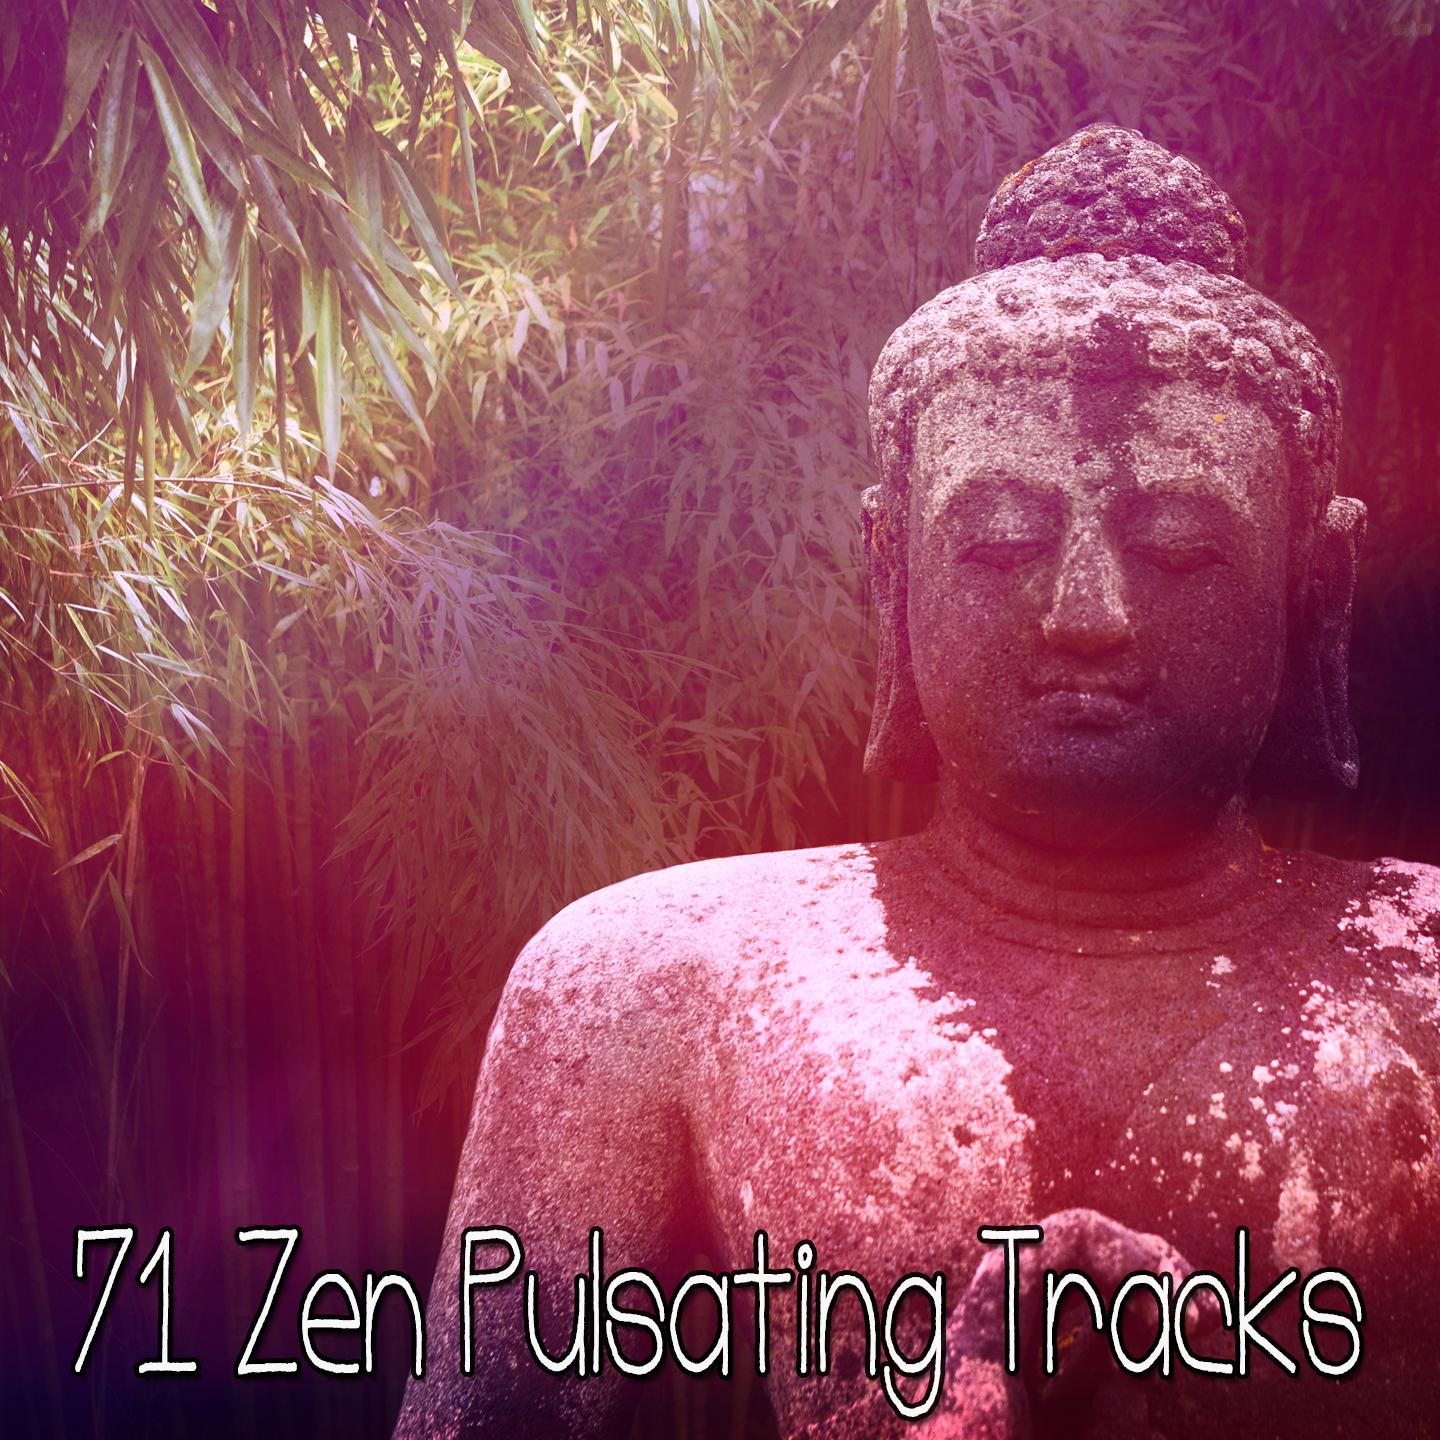 71 Zen Pulsating Tracks